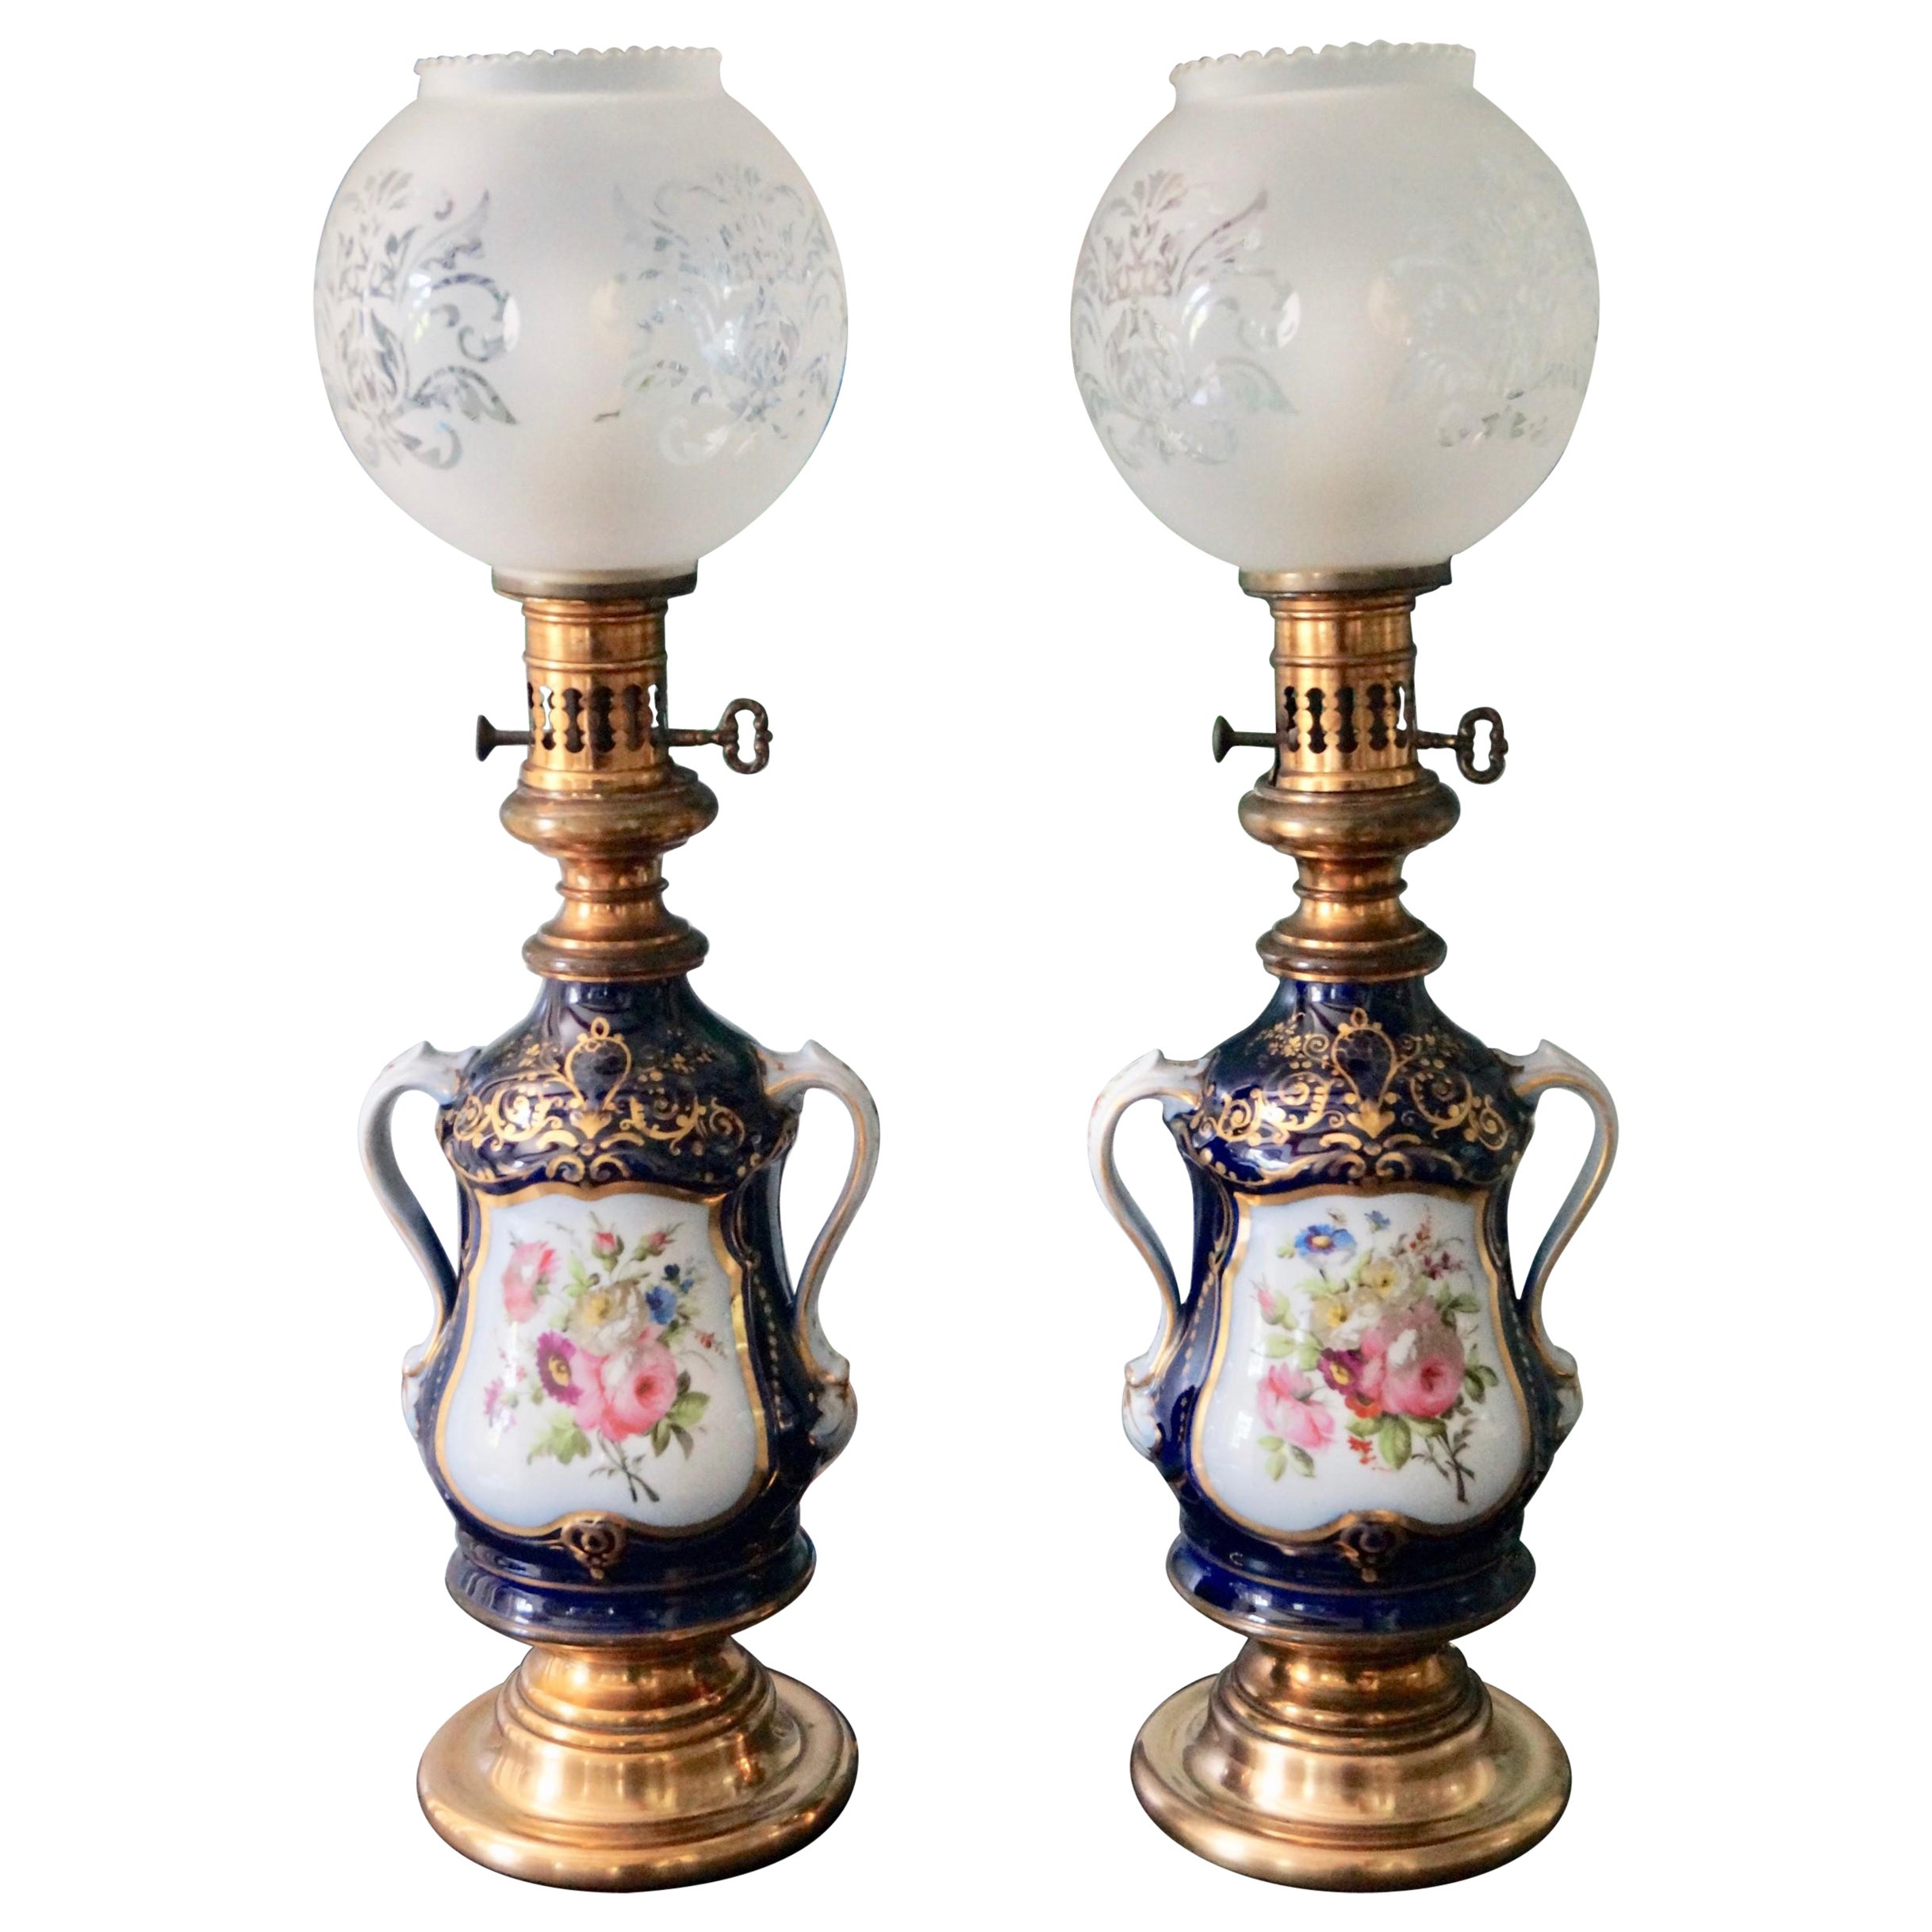 Beautiful Antique Old Paris Porcelain Table Lamps Oil Lamps Franc 1880s